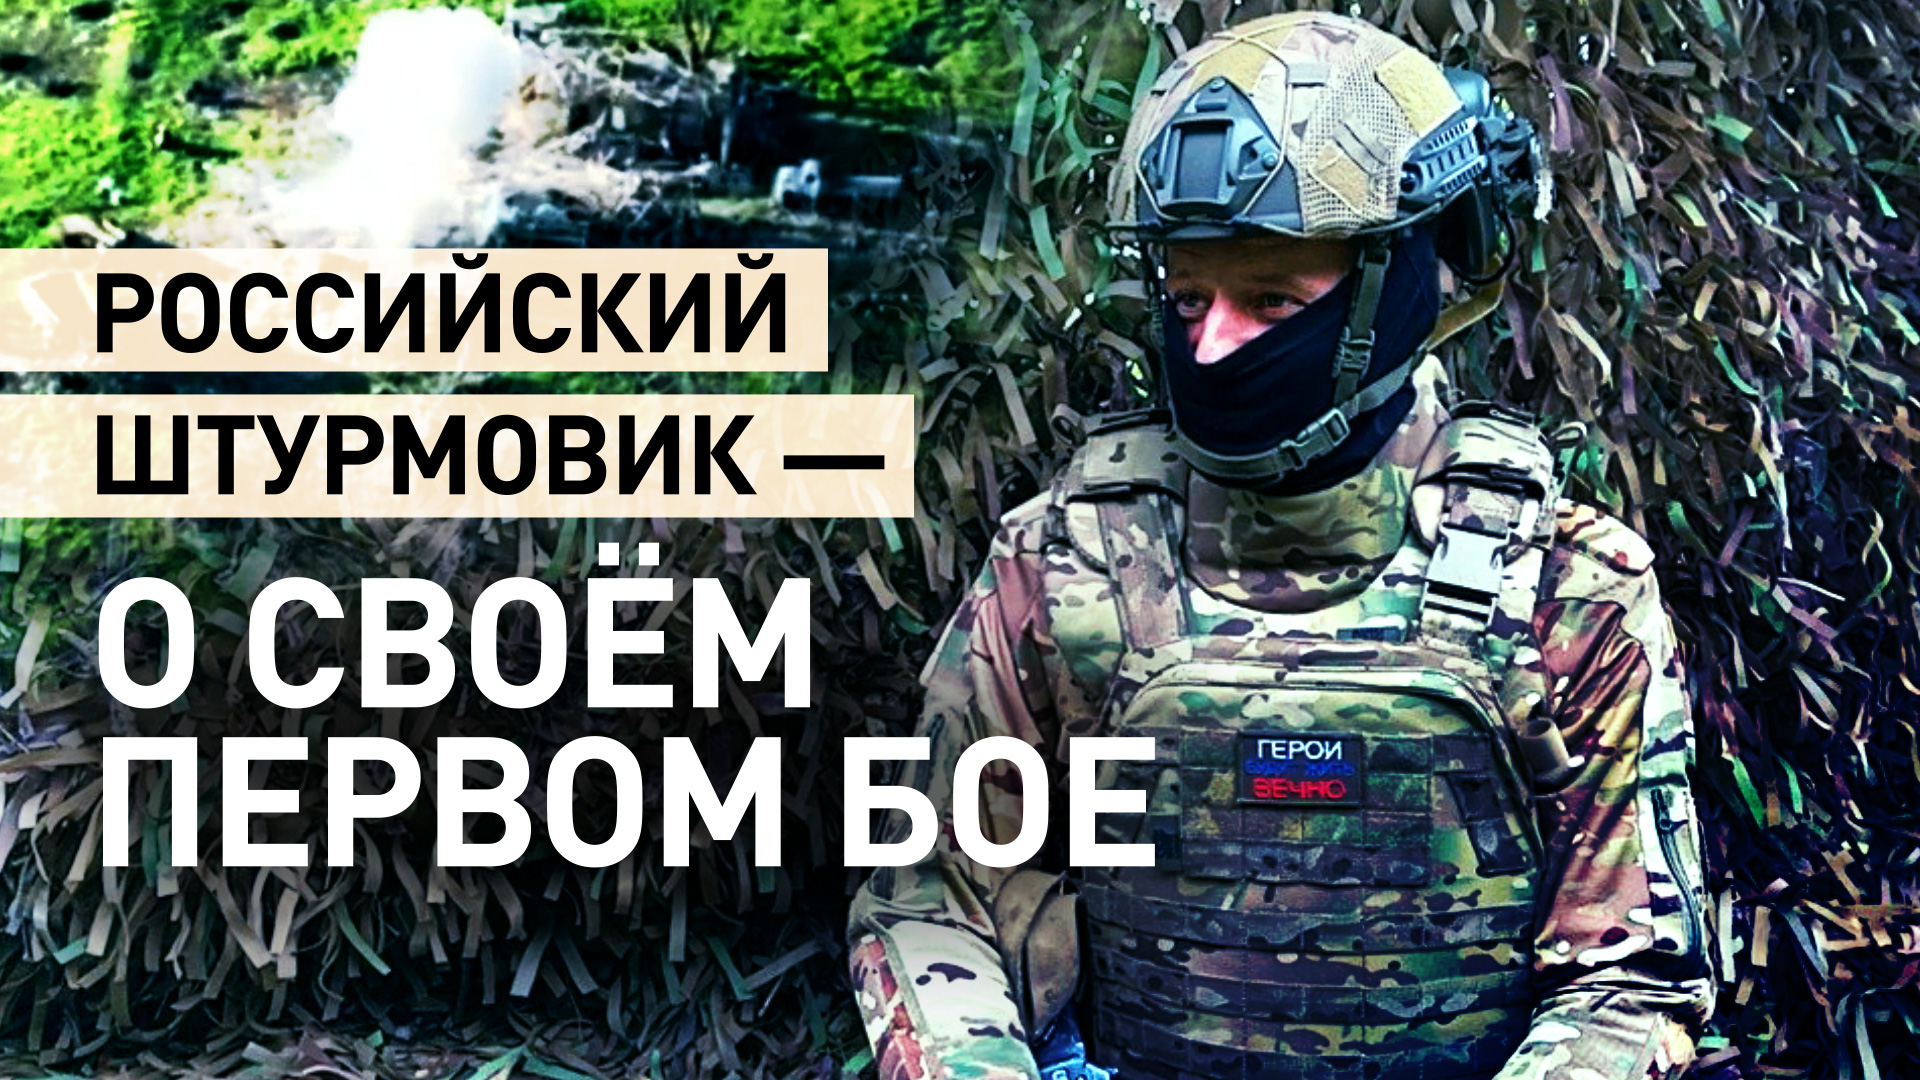 «Танк бил, миномёты, камикадзе рядом взрывались»: штурмовик ВС РФ — о своём первом бое в Работине